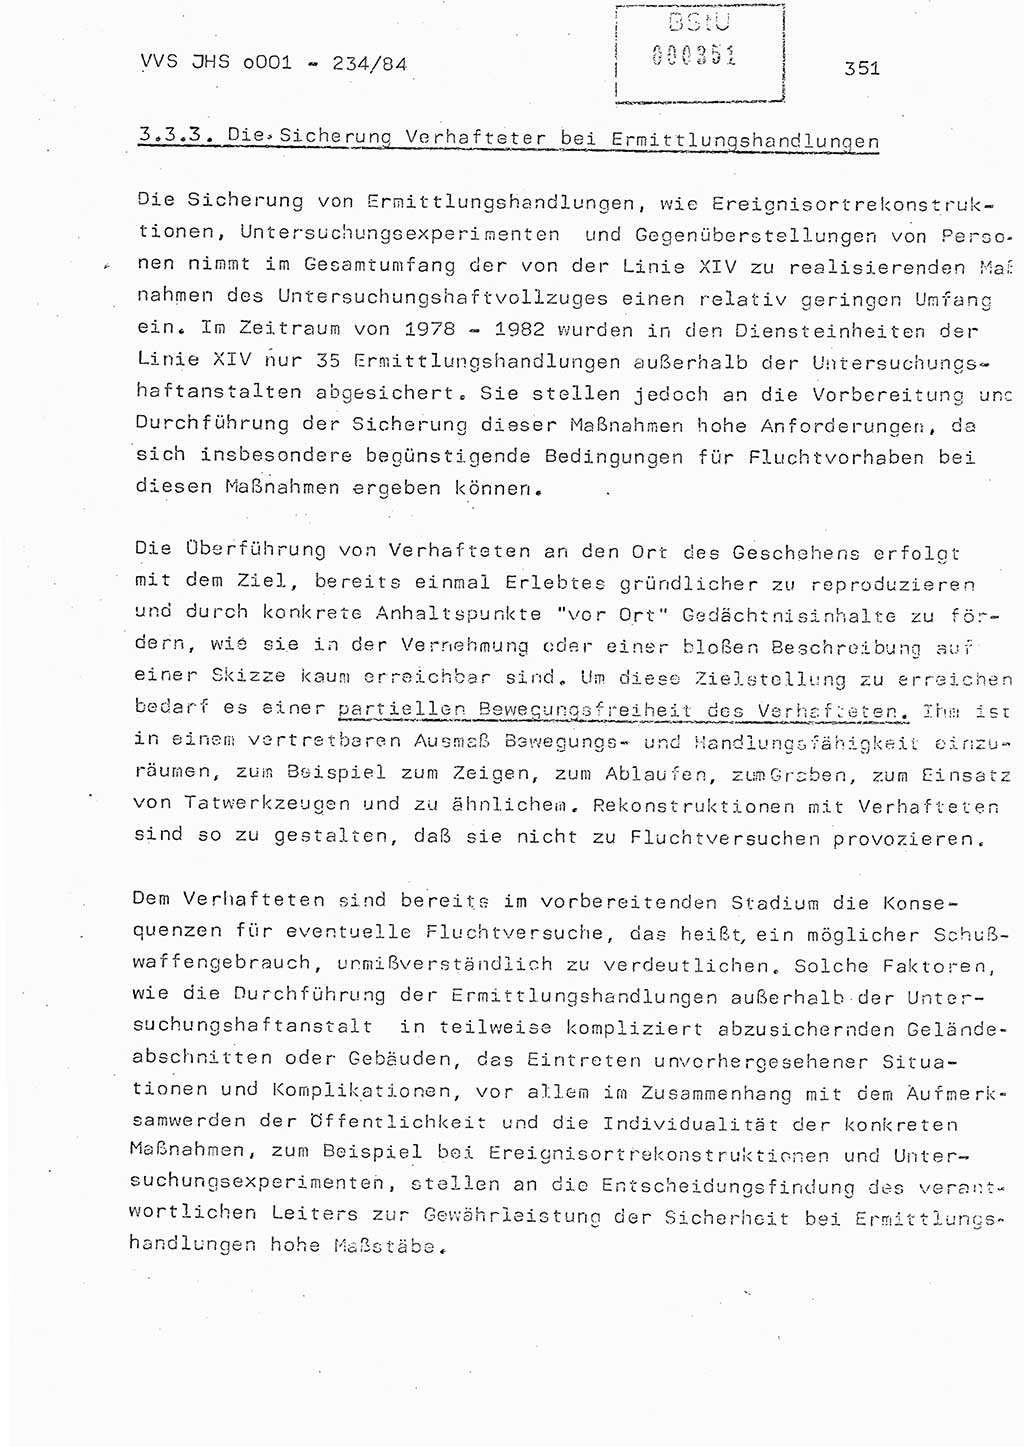 Dissertation Oberst Siegfried Rataizick (Abt. ⅩⅣ), Oberstleutnant Volkmar Heinz (Abt. ⅩⅣ), Oberstleutnant Werner Stein (HA Ⅸ), Hauptmann Heinz Conrad (JHS), Ministerium für Staatssicherheit (MfS) [Deutsche Demokratische Republik (DDR)], Juristische Hochschule (JHS), Vertrauliche Verschlußsache (VVS) o001-234/84, Potsdam 1984, Seite 351 (Diss. MfS DDR JHS VVS o001-234/84 1984, S. 351)